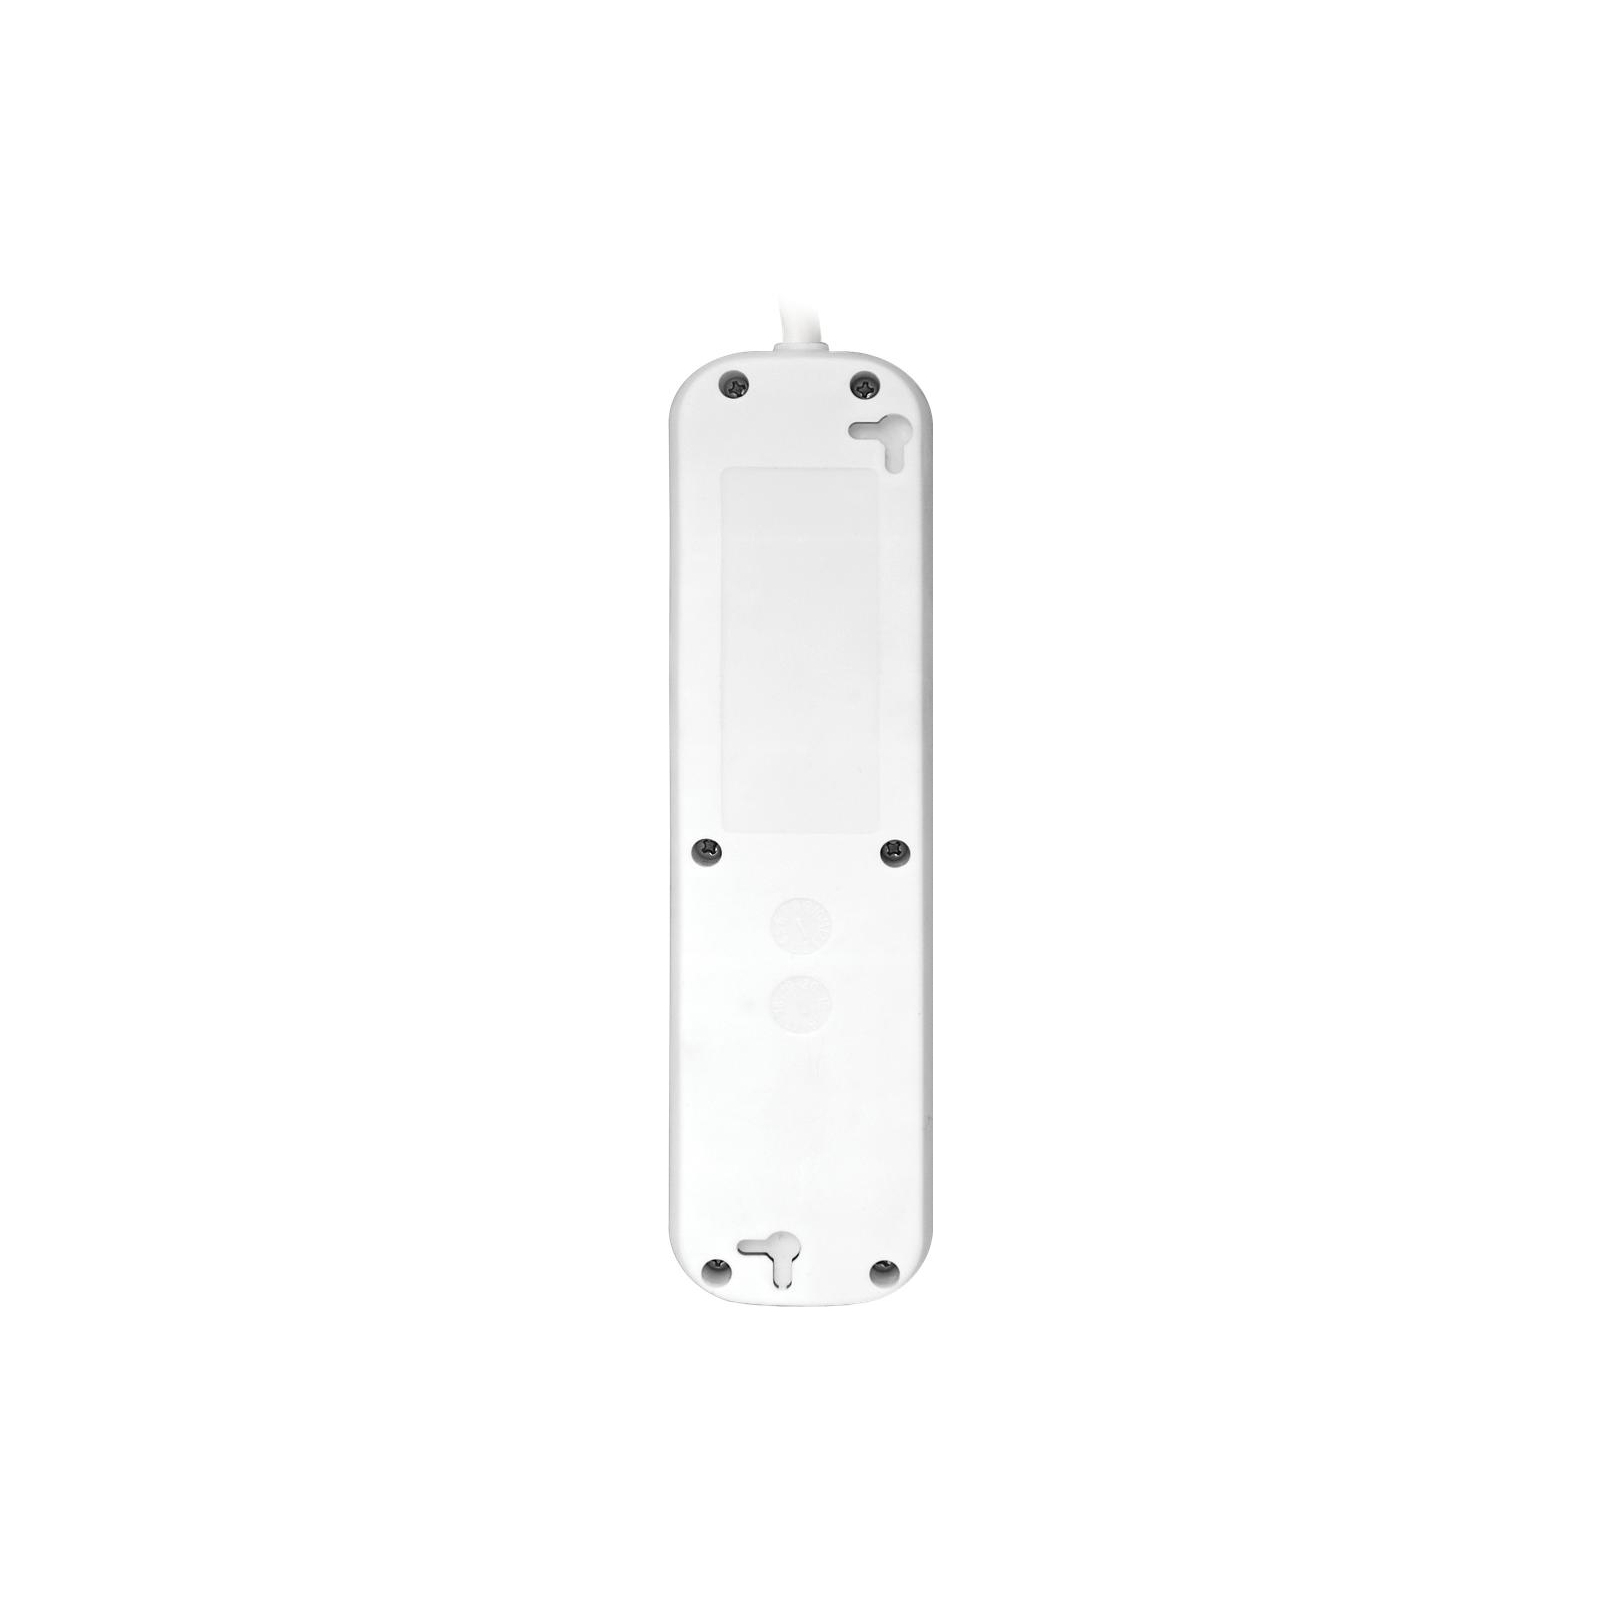 Сетевой удлинитель Defender S450 5.0 m 4 роз switch white (99239) изображение 3